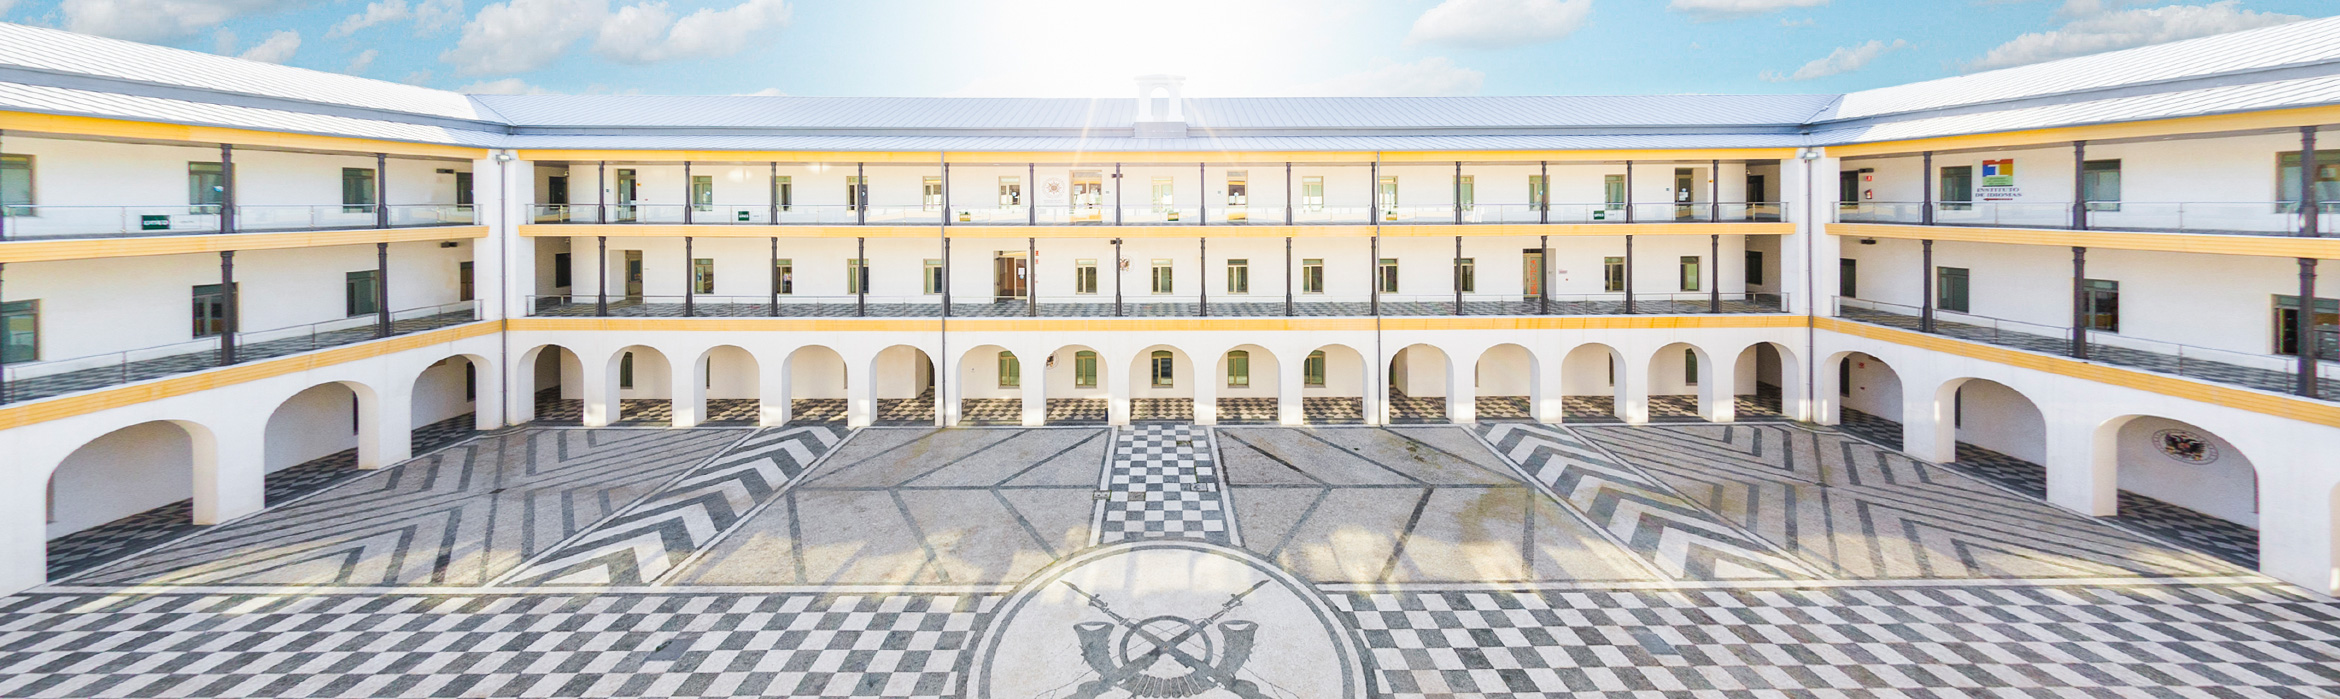 Imagen panorámica desde la parte más larga del patio interior del edificio de la Facultad de Educación, Economía y Humanidades de Ceuta